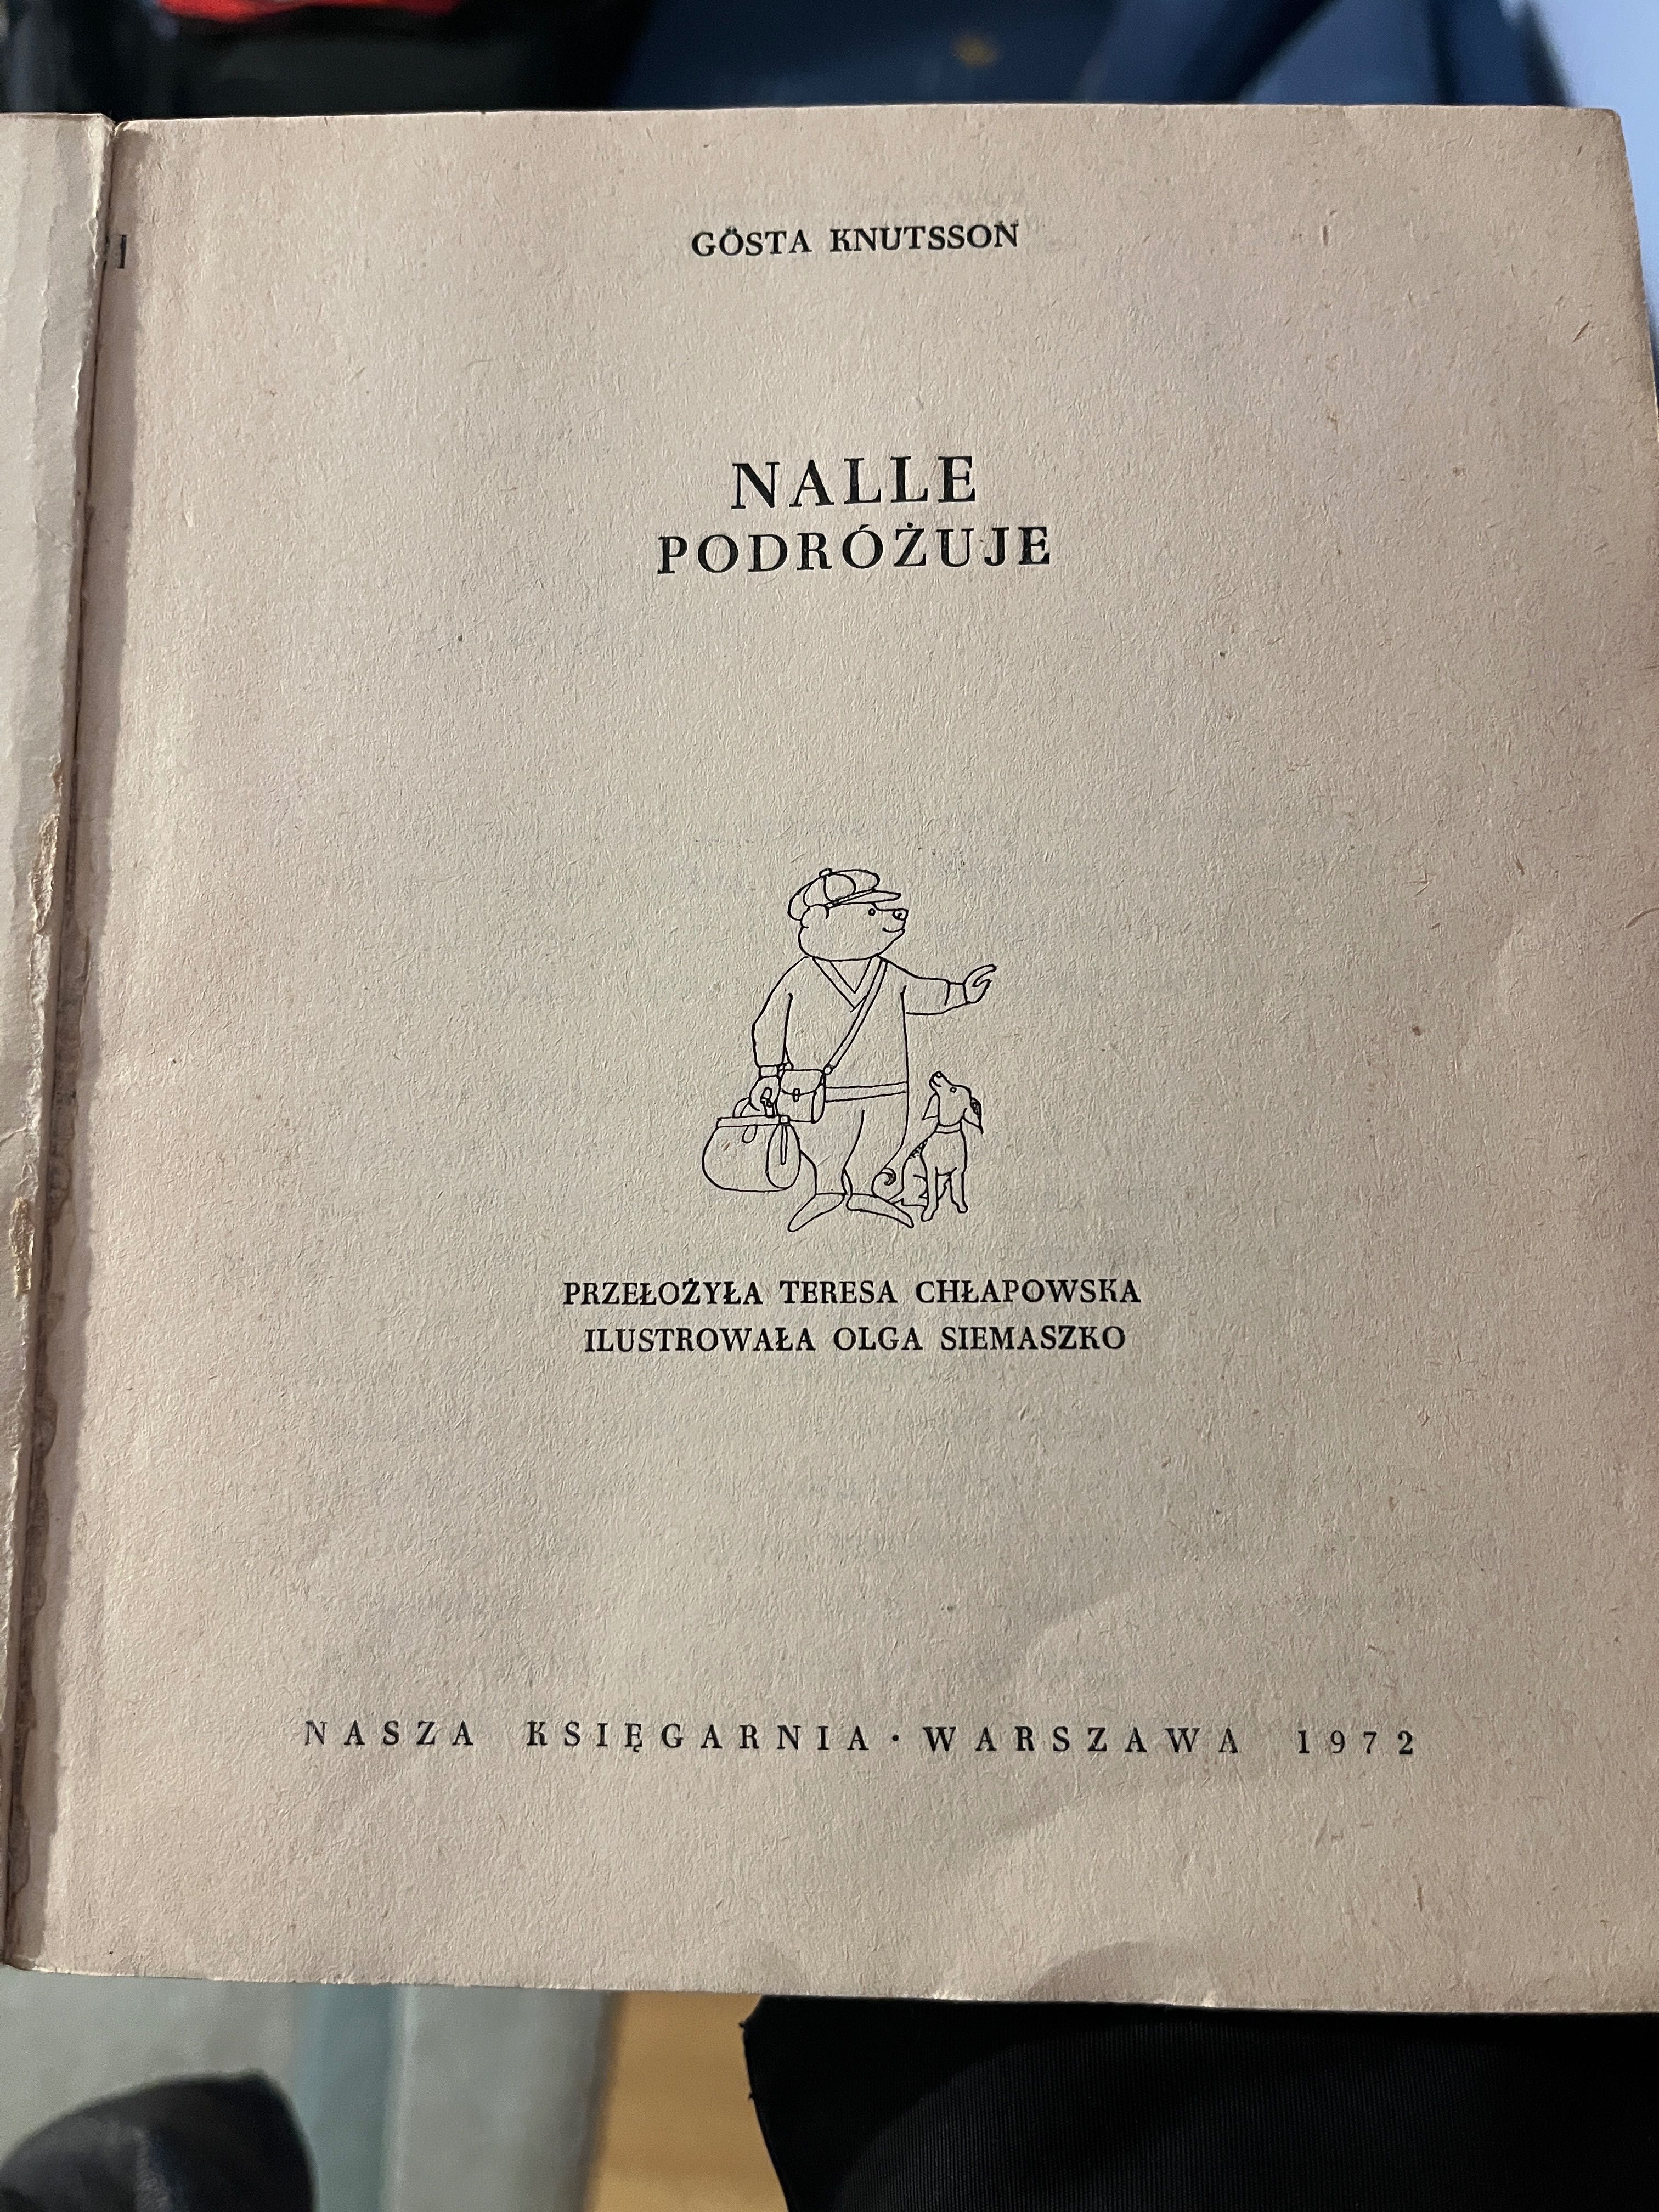 Nalle podróżuje - książka